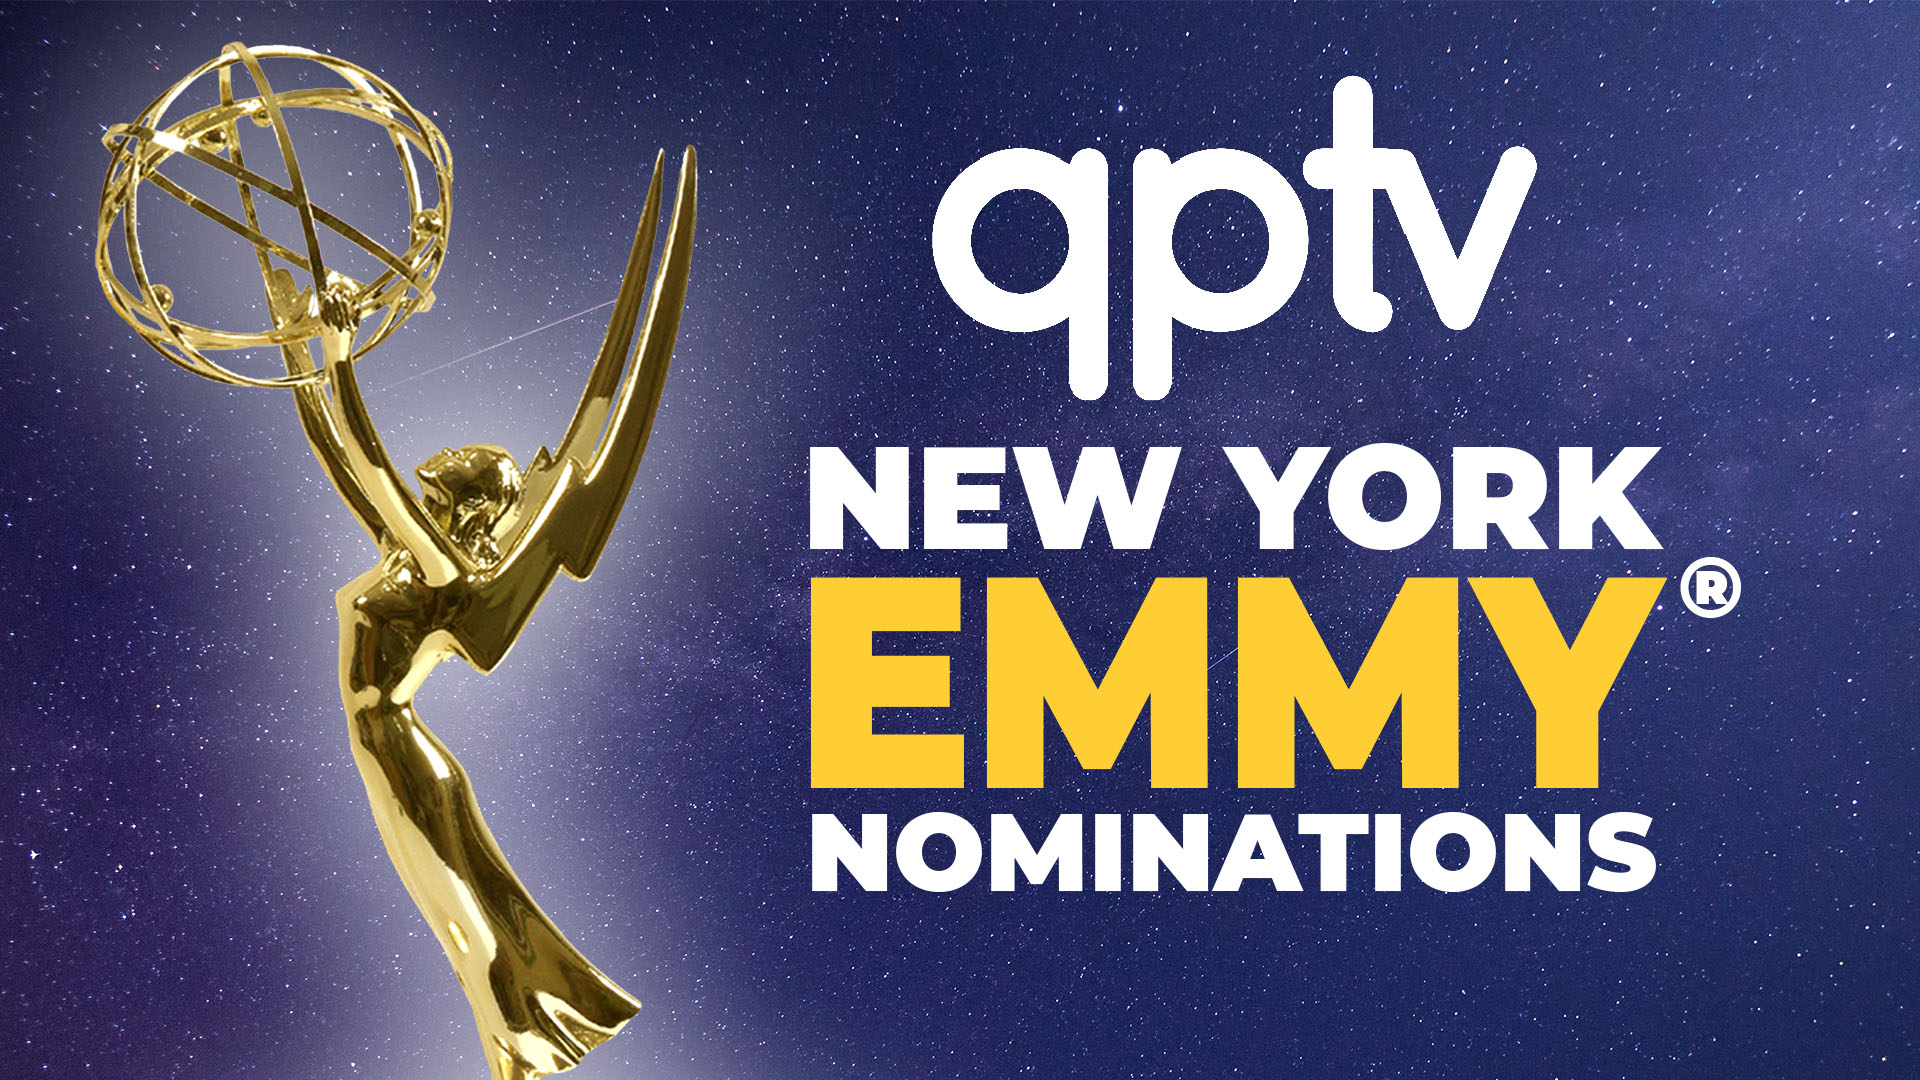 QPTV NY Emmy Nominations